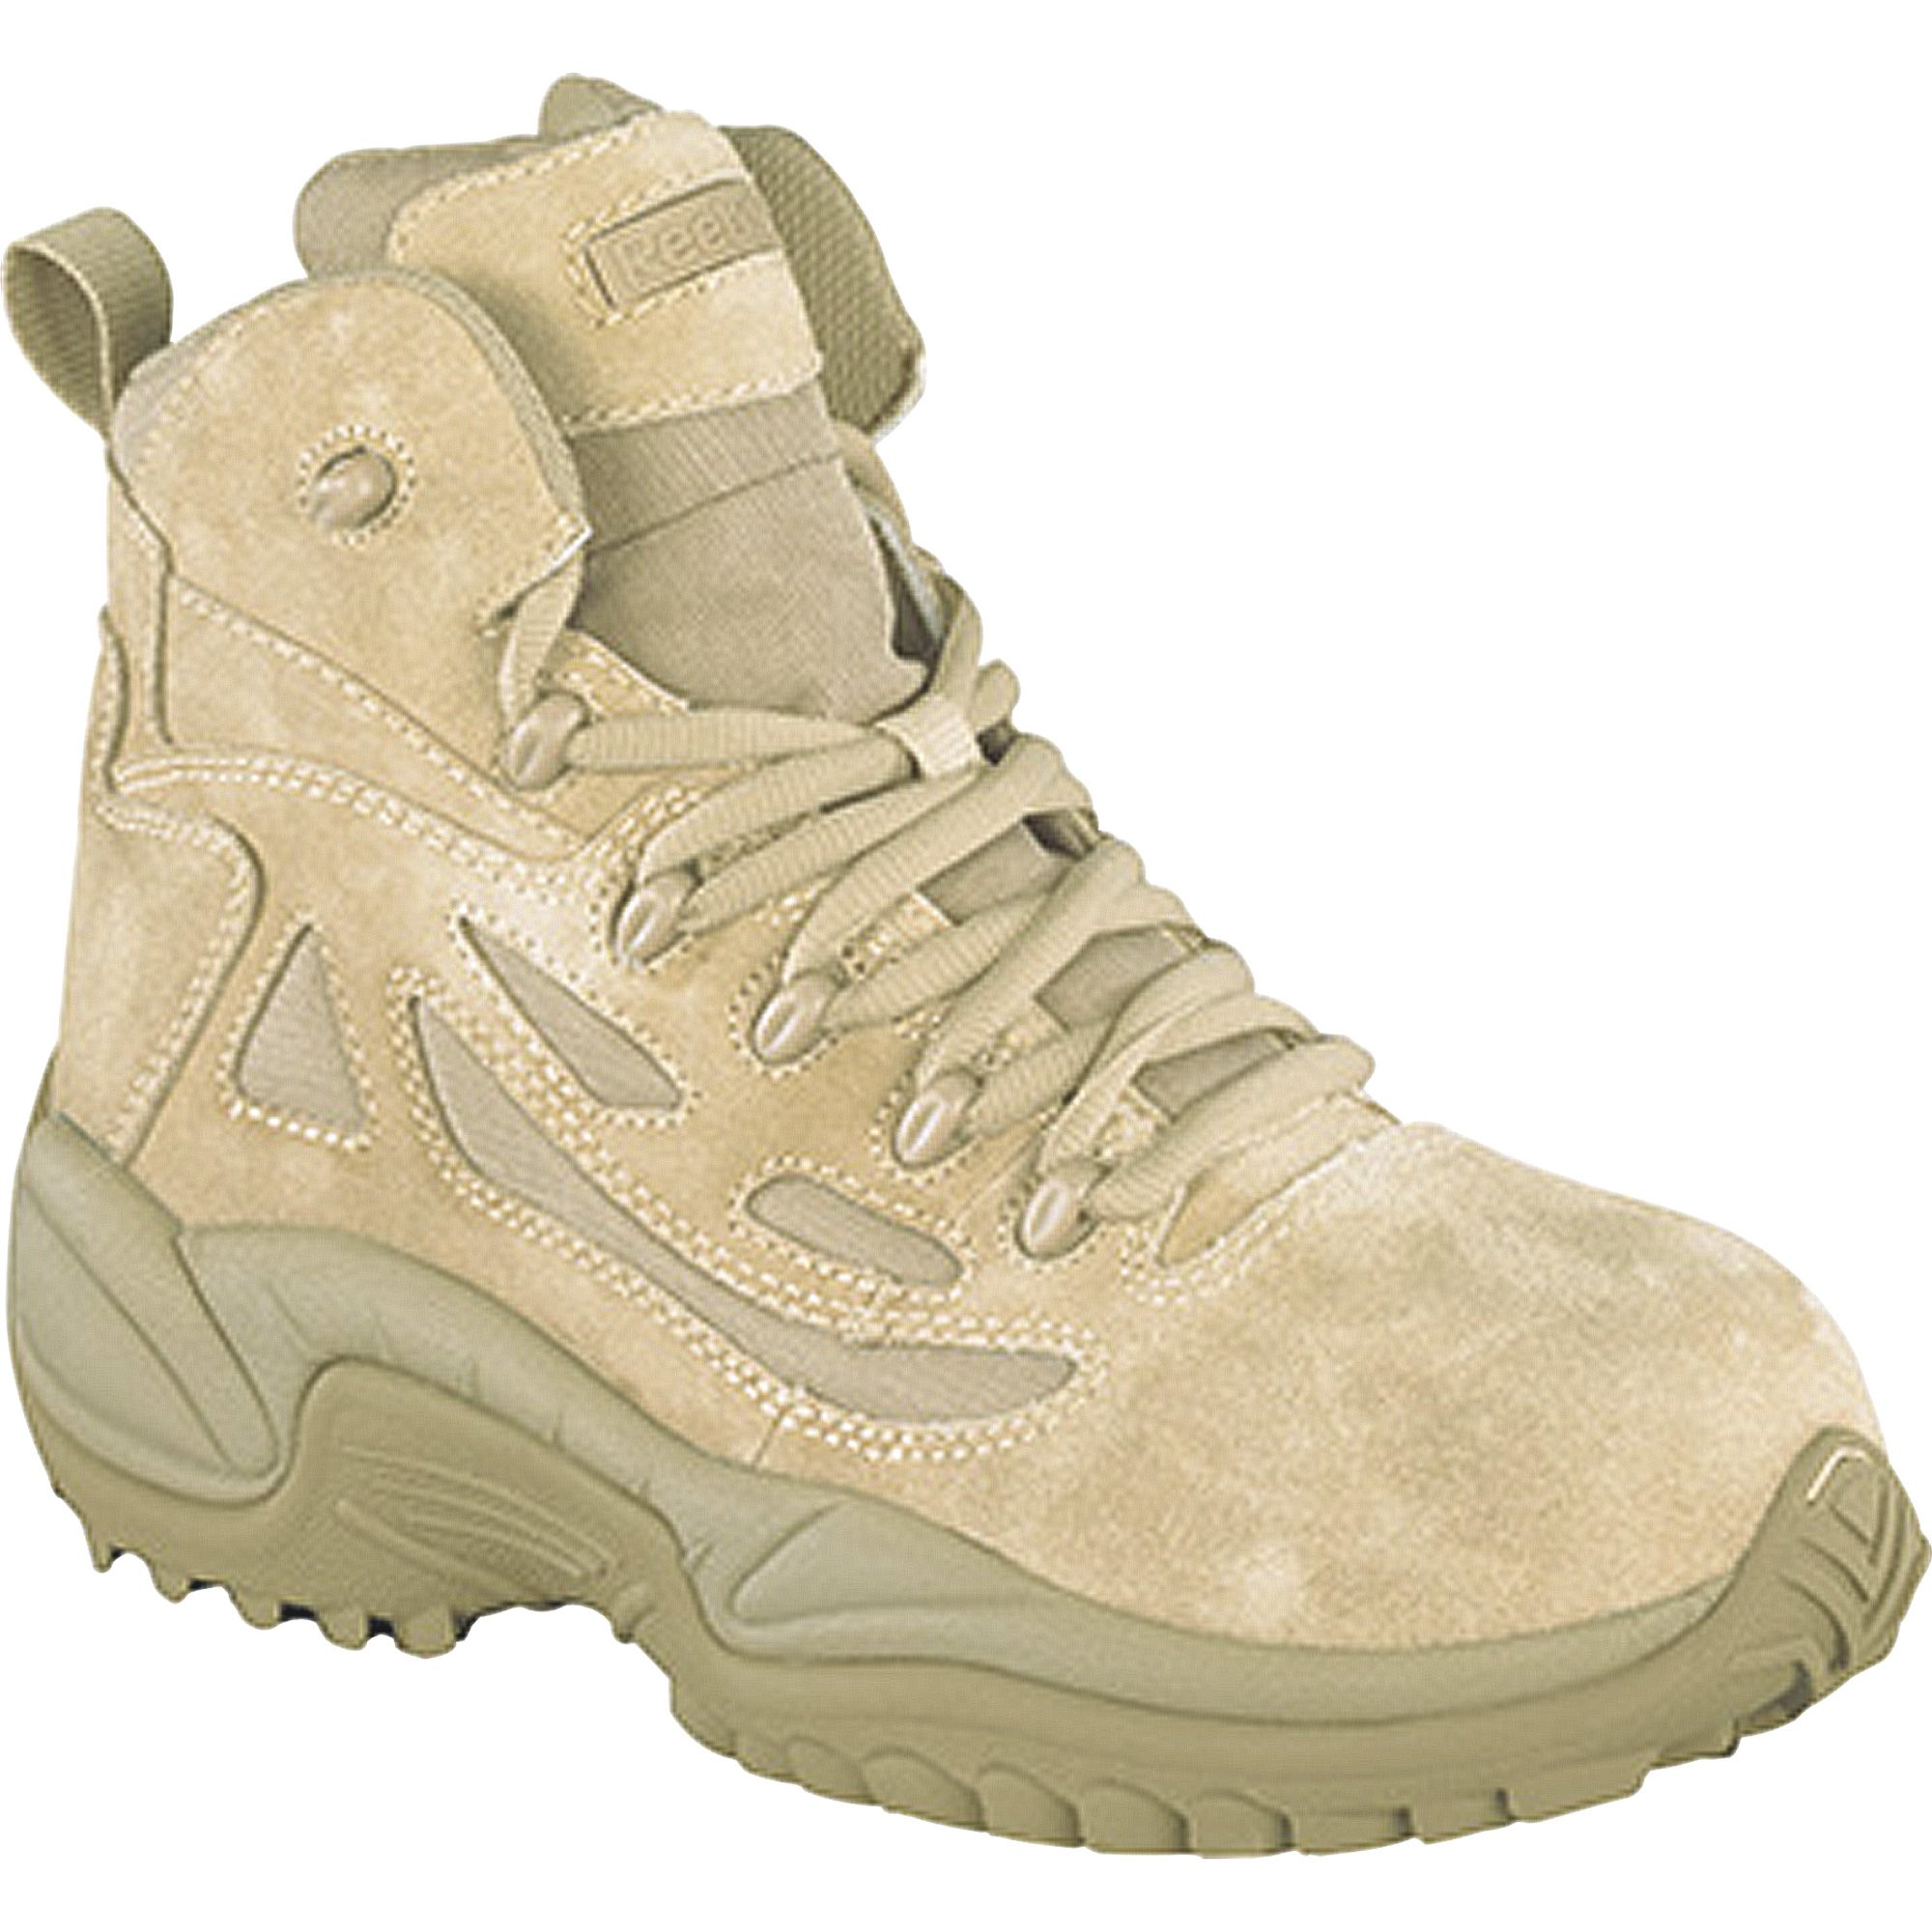 Men's Rapid Response 6in. Composite Toe Zip Boot Tan, Model# RB8694 | Northern Tool